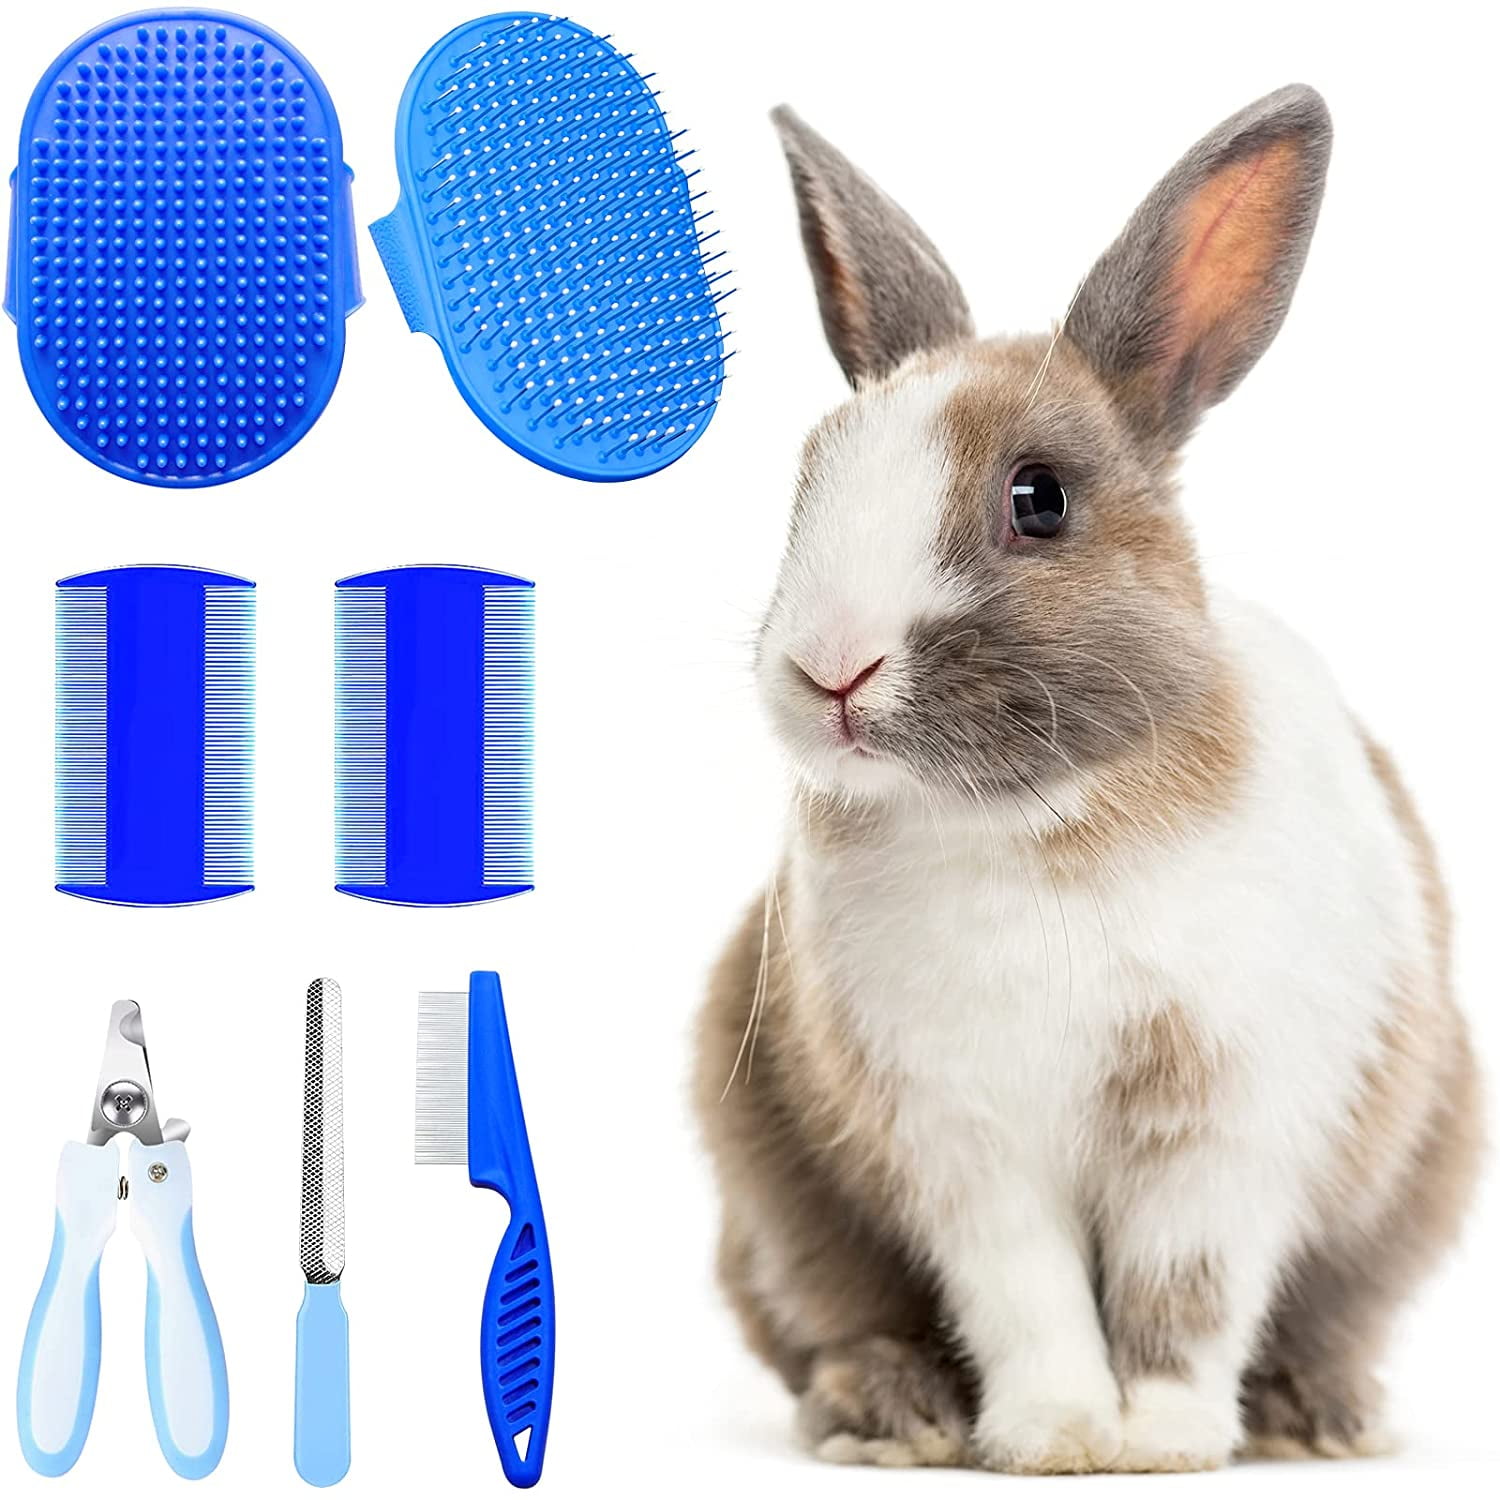 Ferplast Small Animal Grooming Kit 